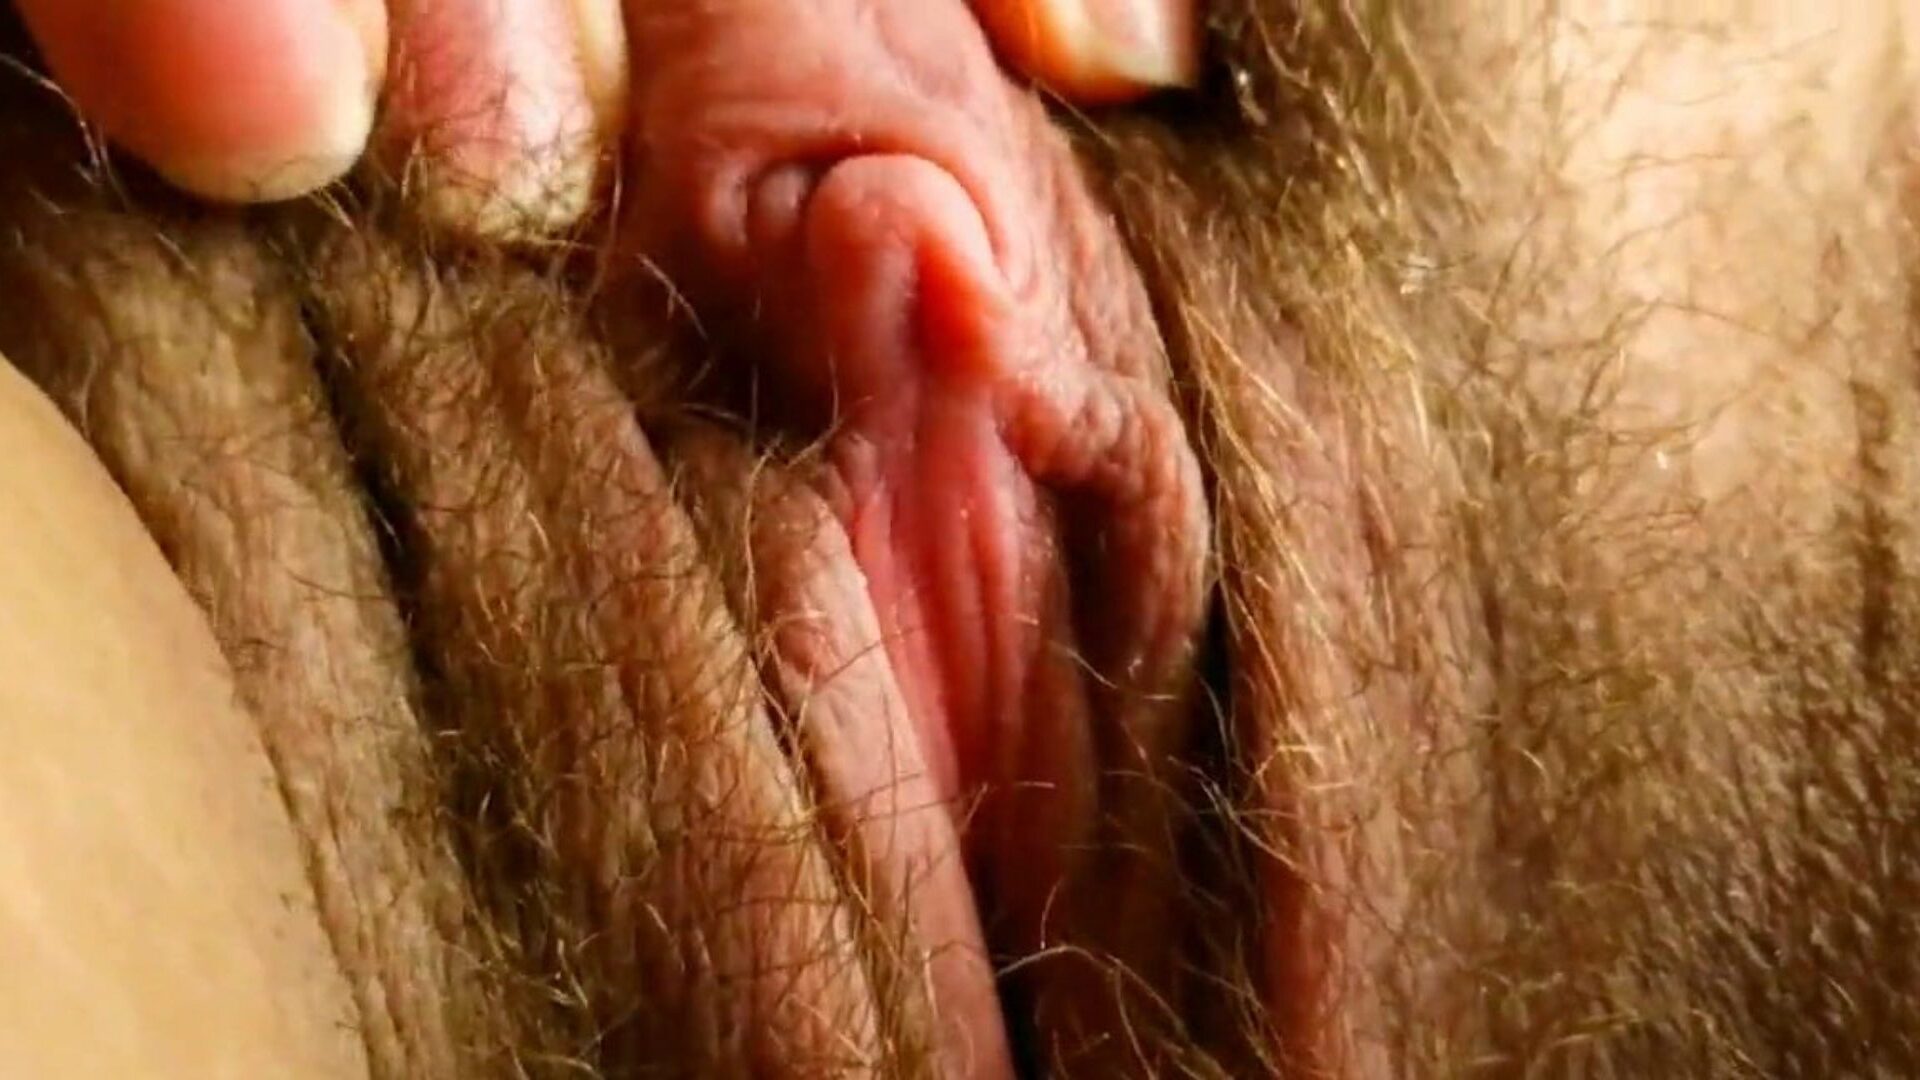 bu gördüğün en seksi büyük klitoris: hd porno af izle bu xhamster klibinde gördüğün en seksi büyük klitoris - herkes için ücretsiz brezilyalı kıllı hd sert çekirdekli pornografi tüp videolarının nihai koleksiyonu